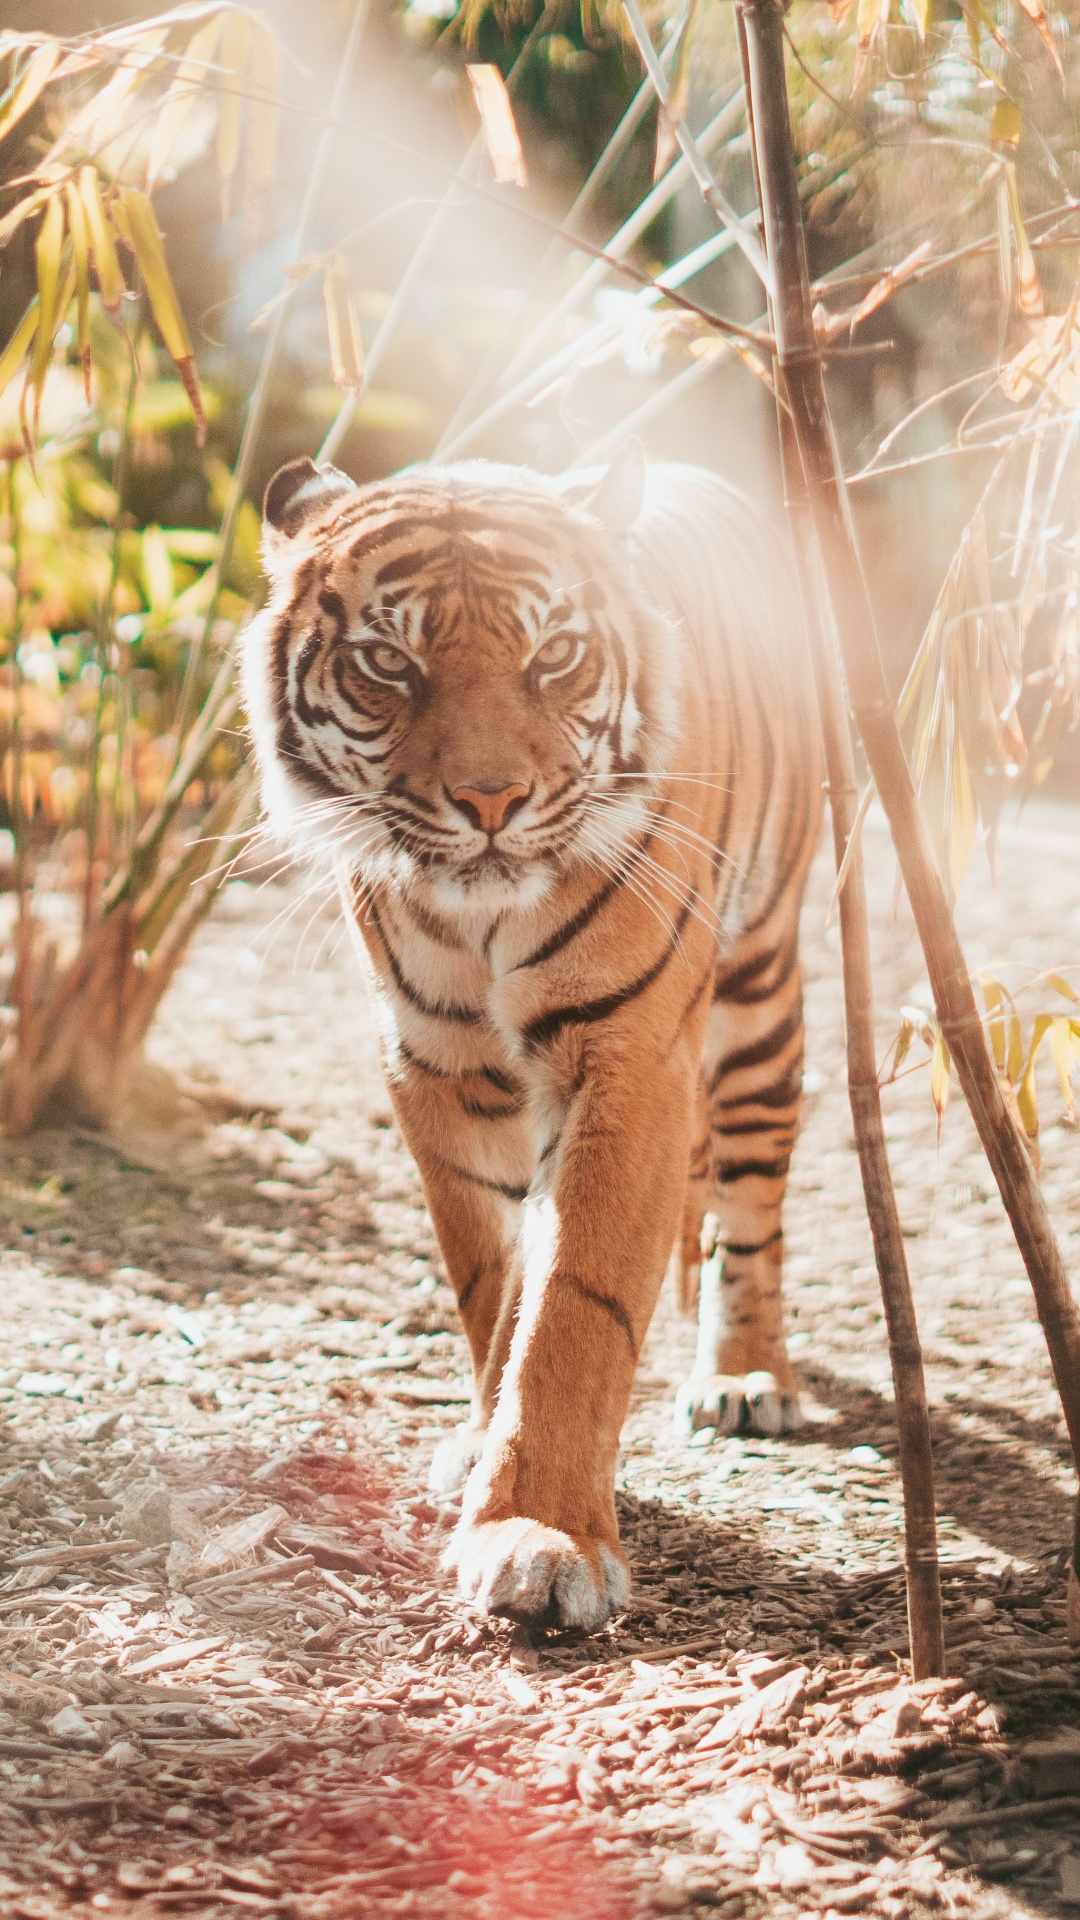 老虎, 孟加拉虎, 野生动物, 陆地动物, 猫科 壁纸 1080x1920 允许